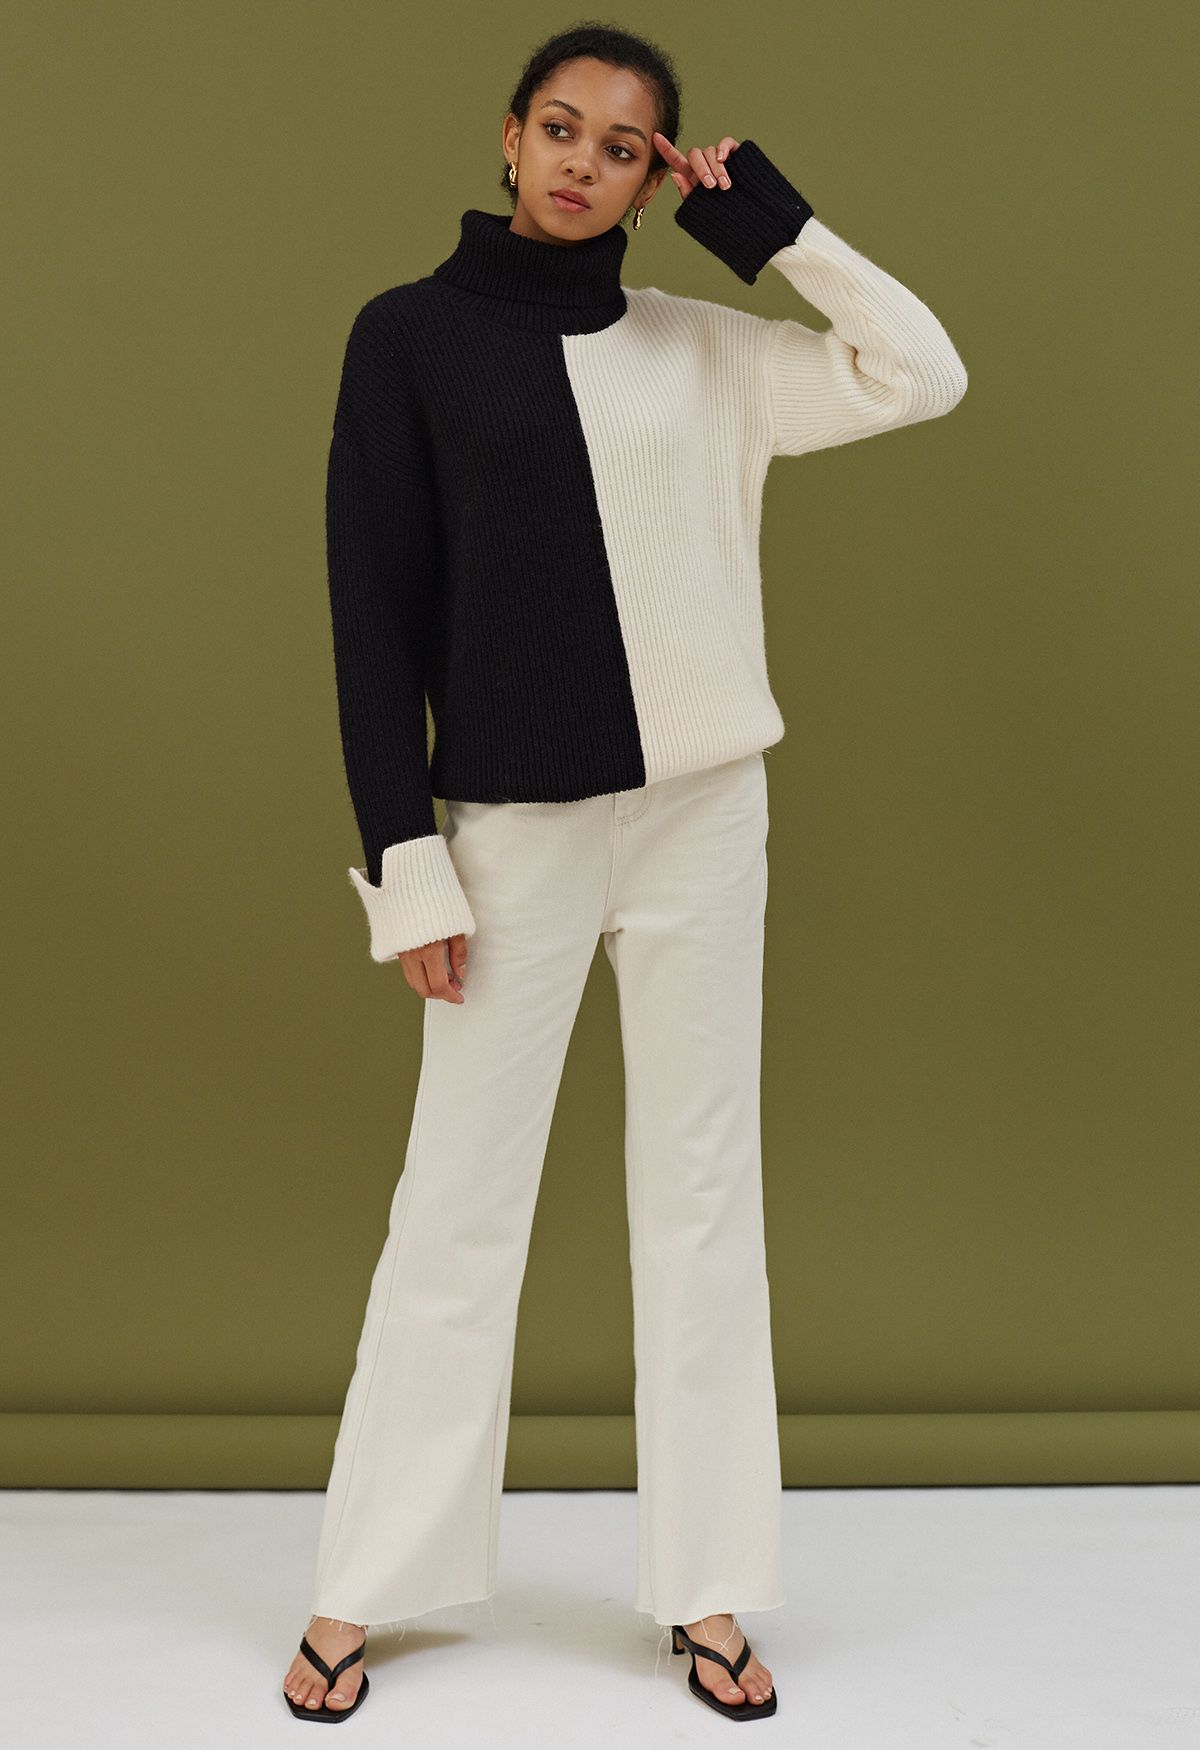 Maglione a collo alto in maglia grossa bicolore con risvolto sul retro